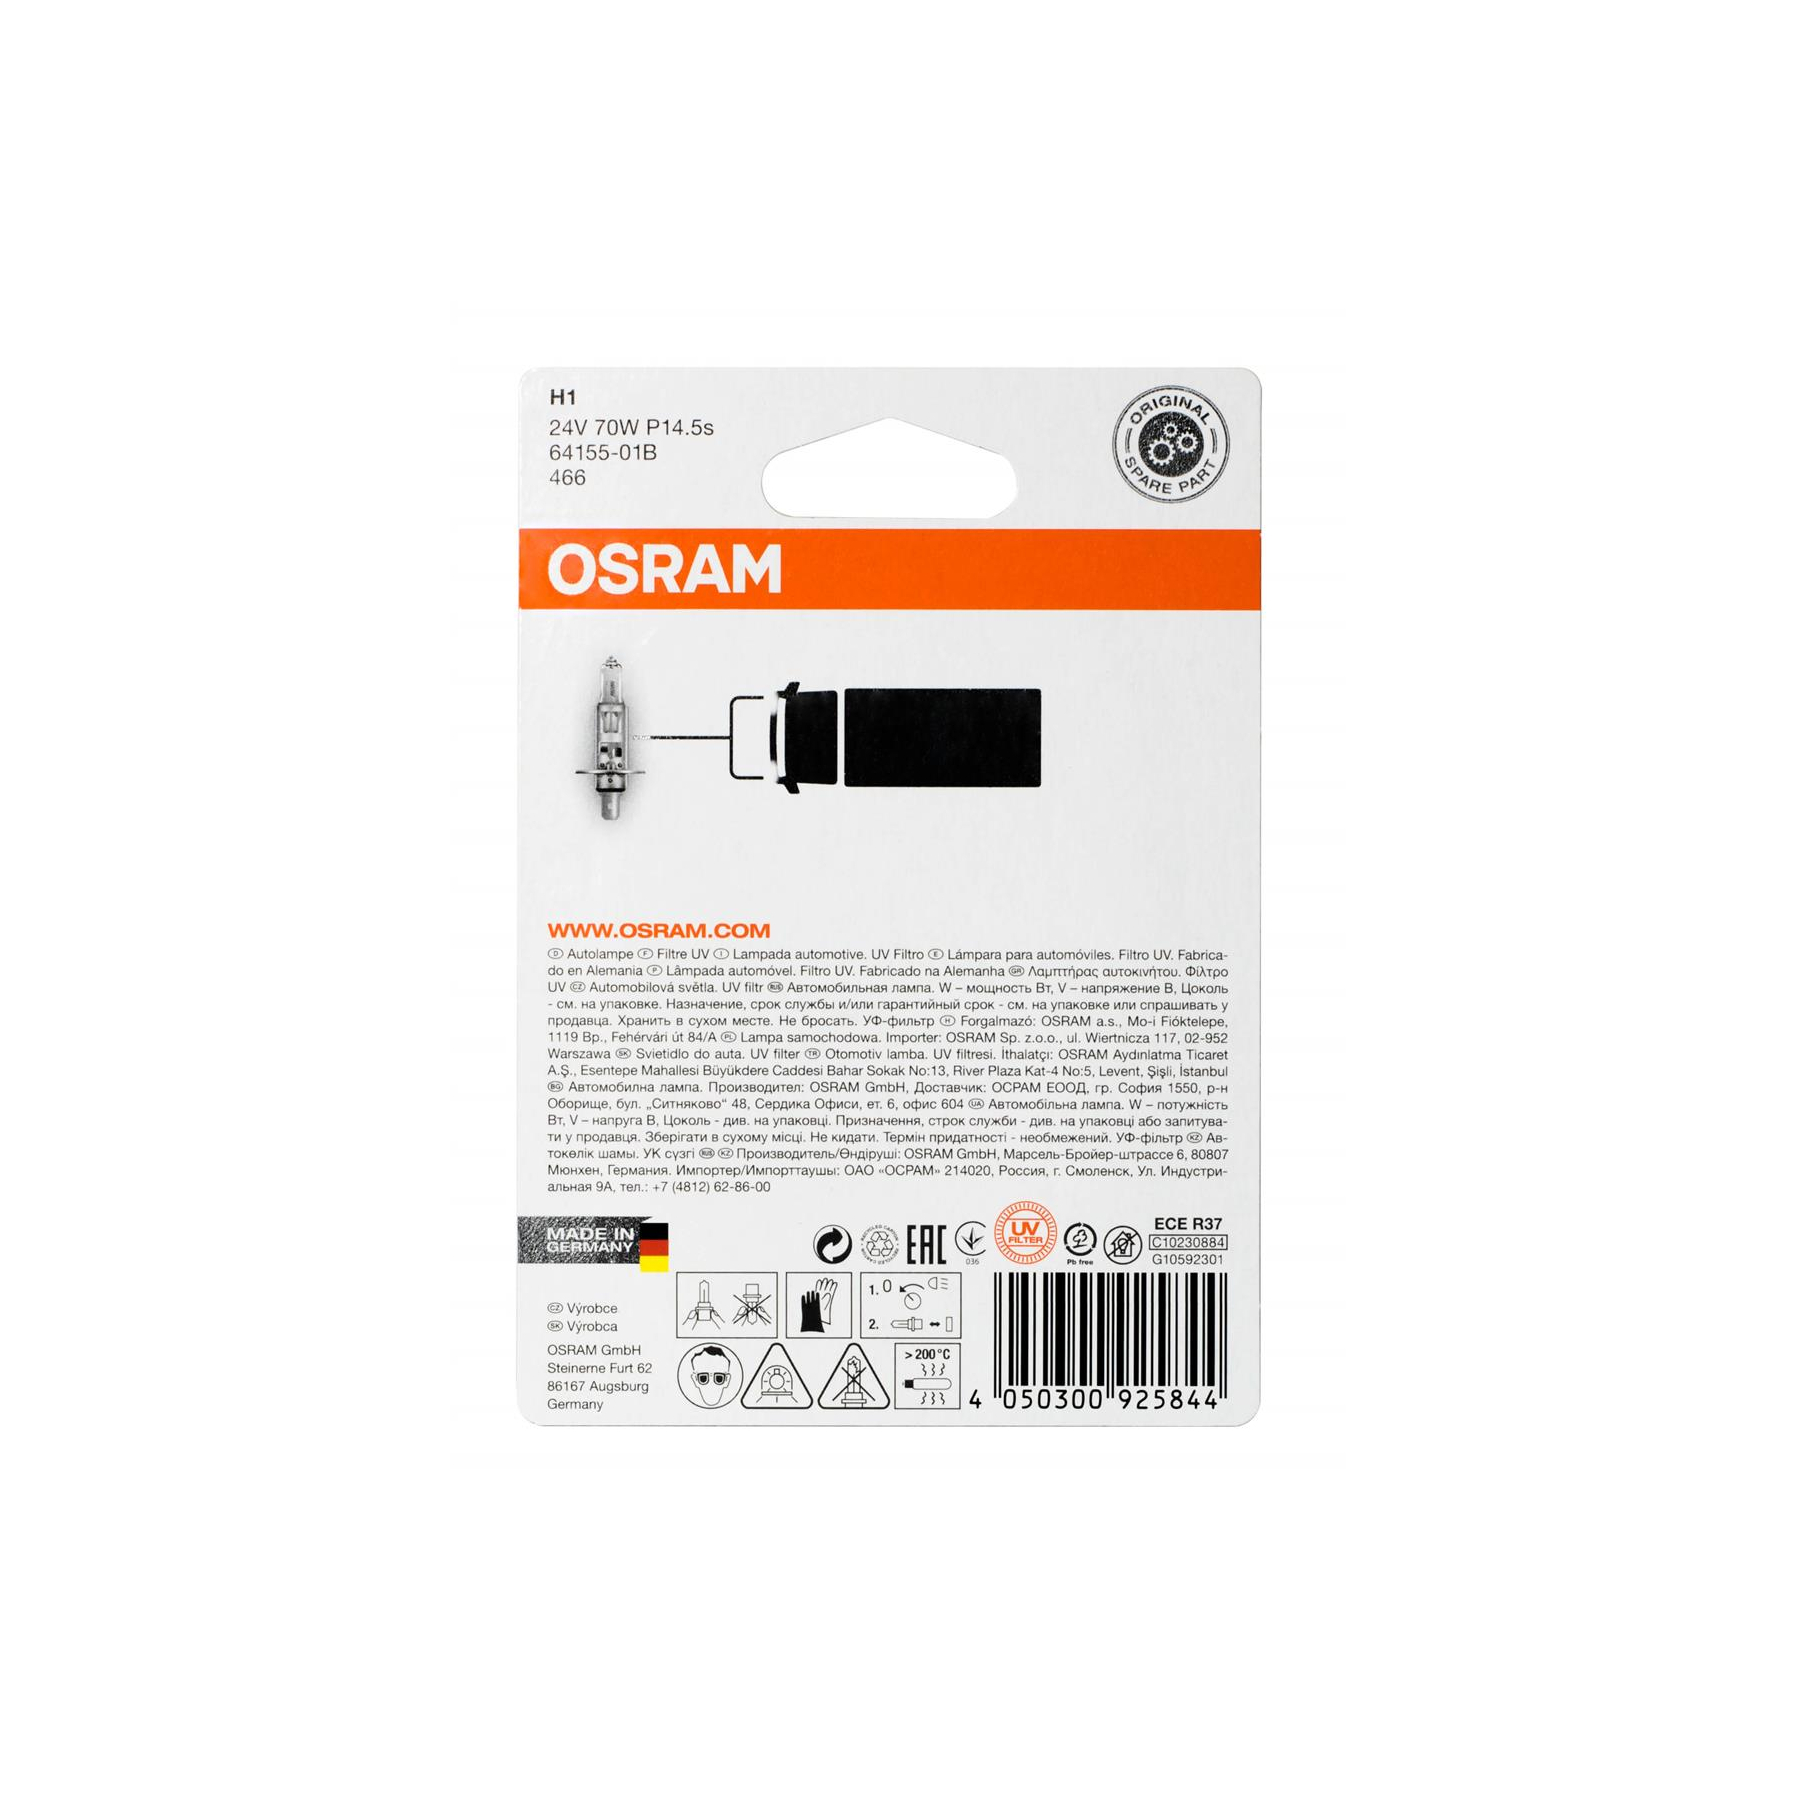 Osram 64155-01B H1 24V 